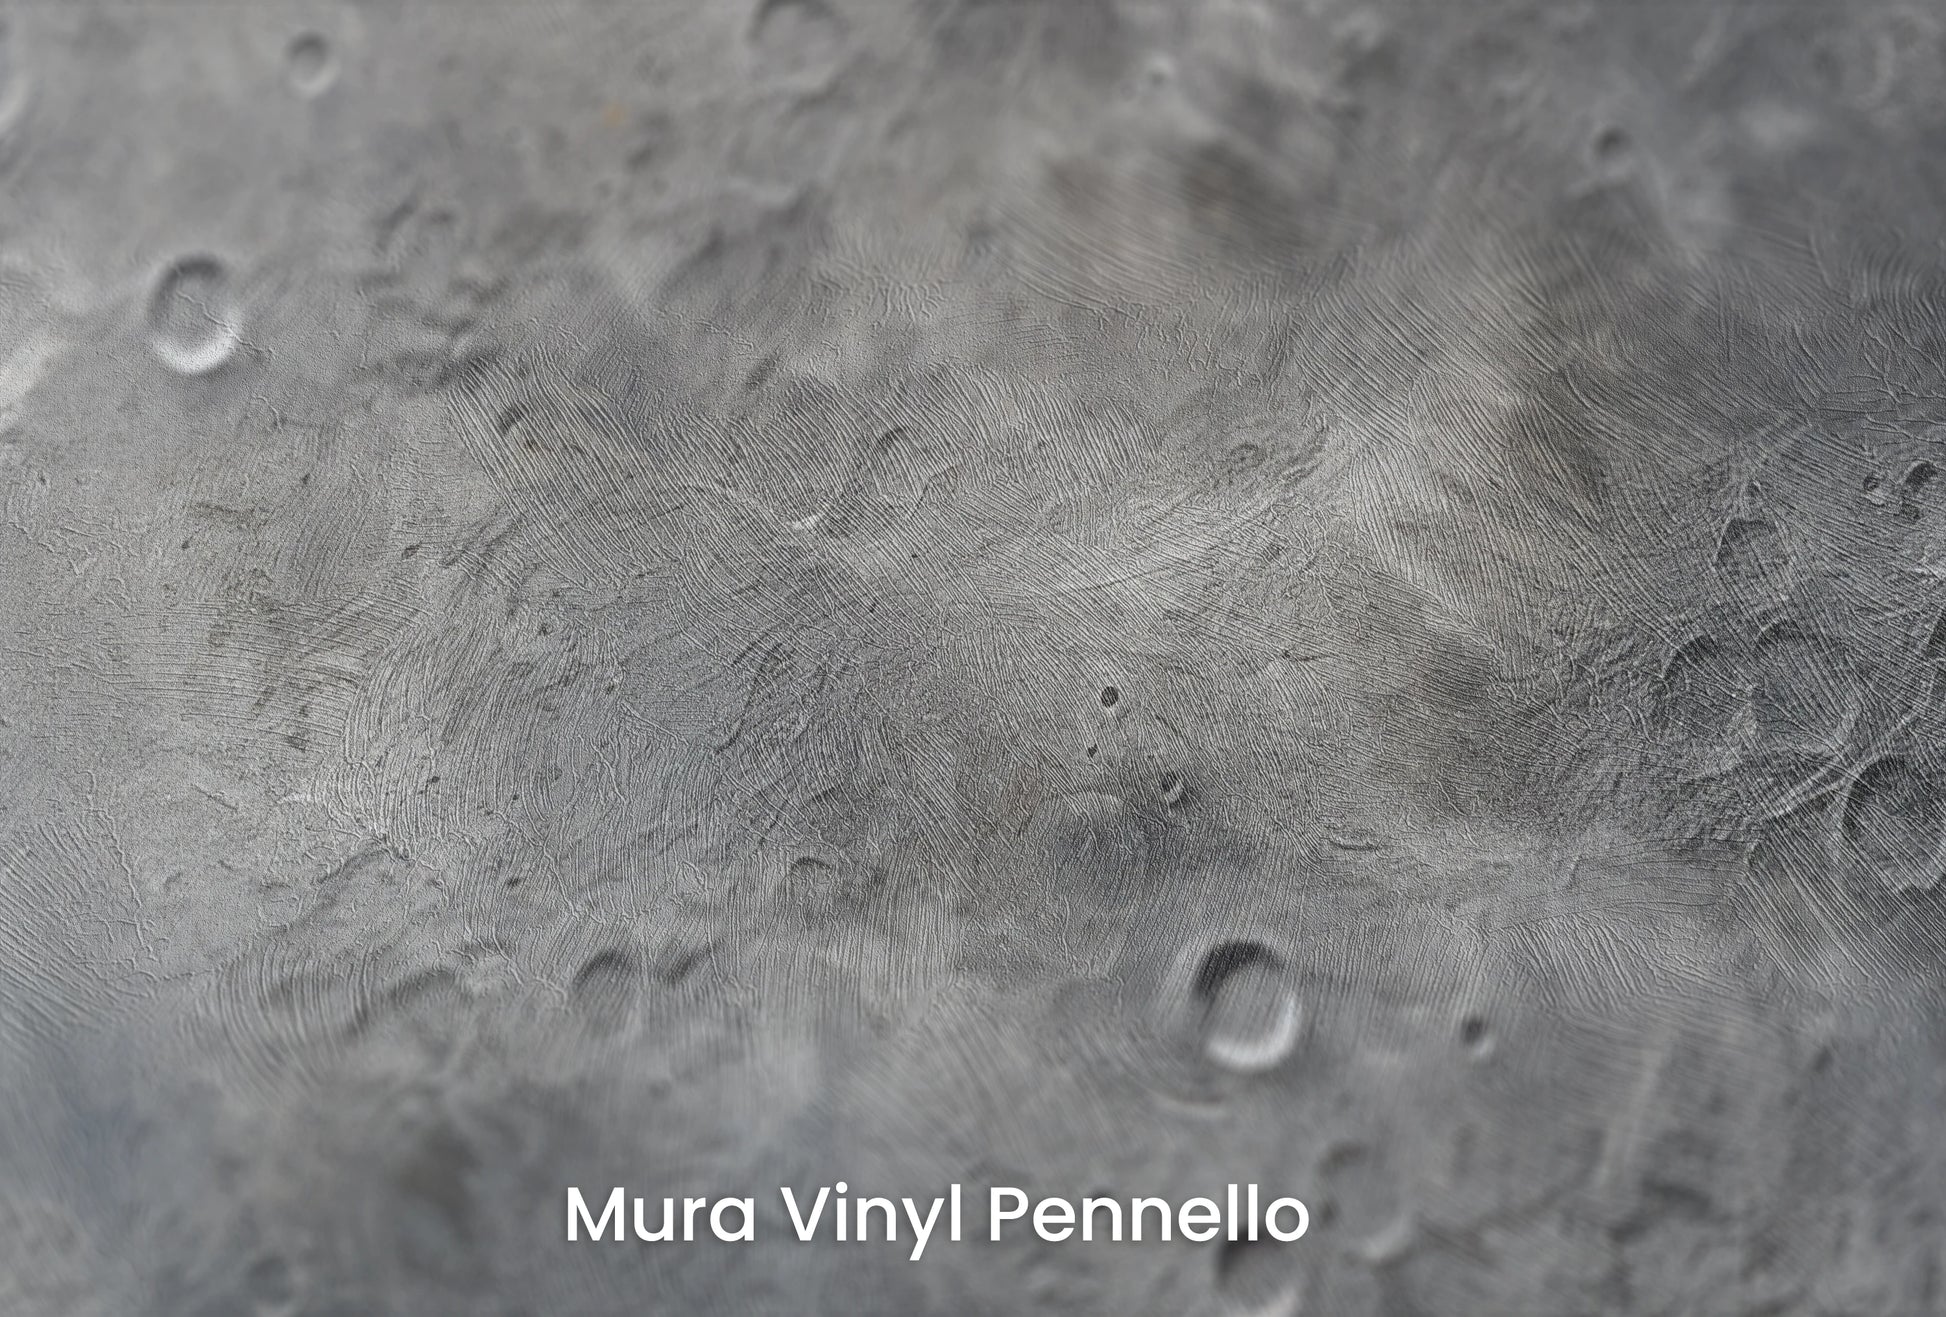 Zbliżenie na artystyczną fototapetę o nazwie Solar Winds na podłożu Mura Vinyl Pennello - faktura pociągnięć pędzla malarskiego.